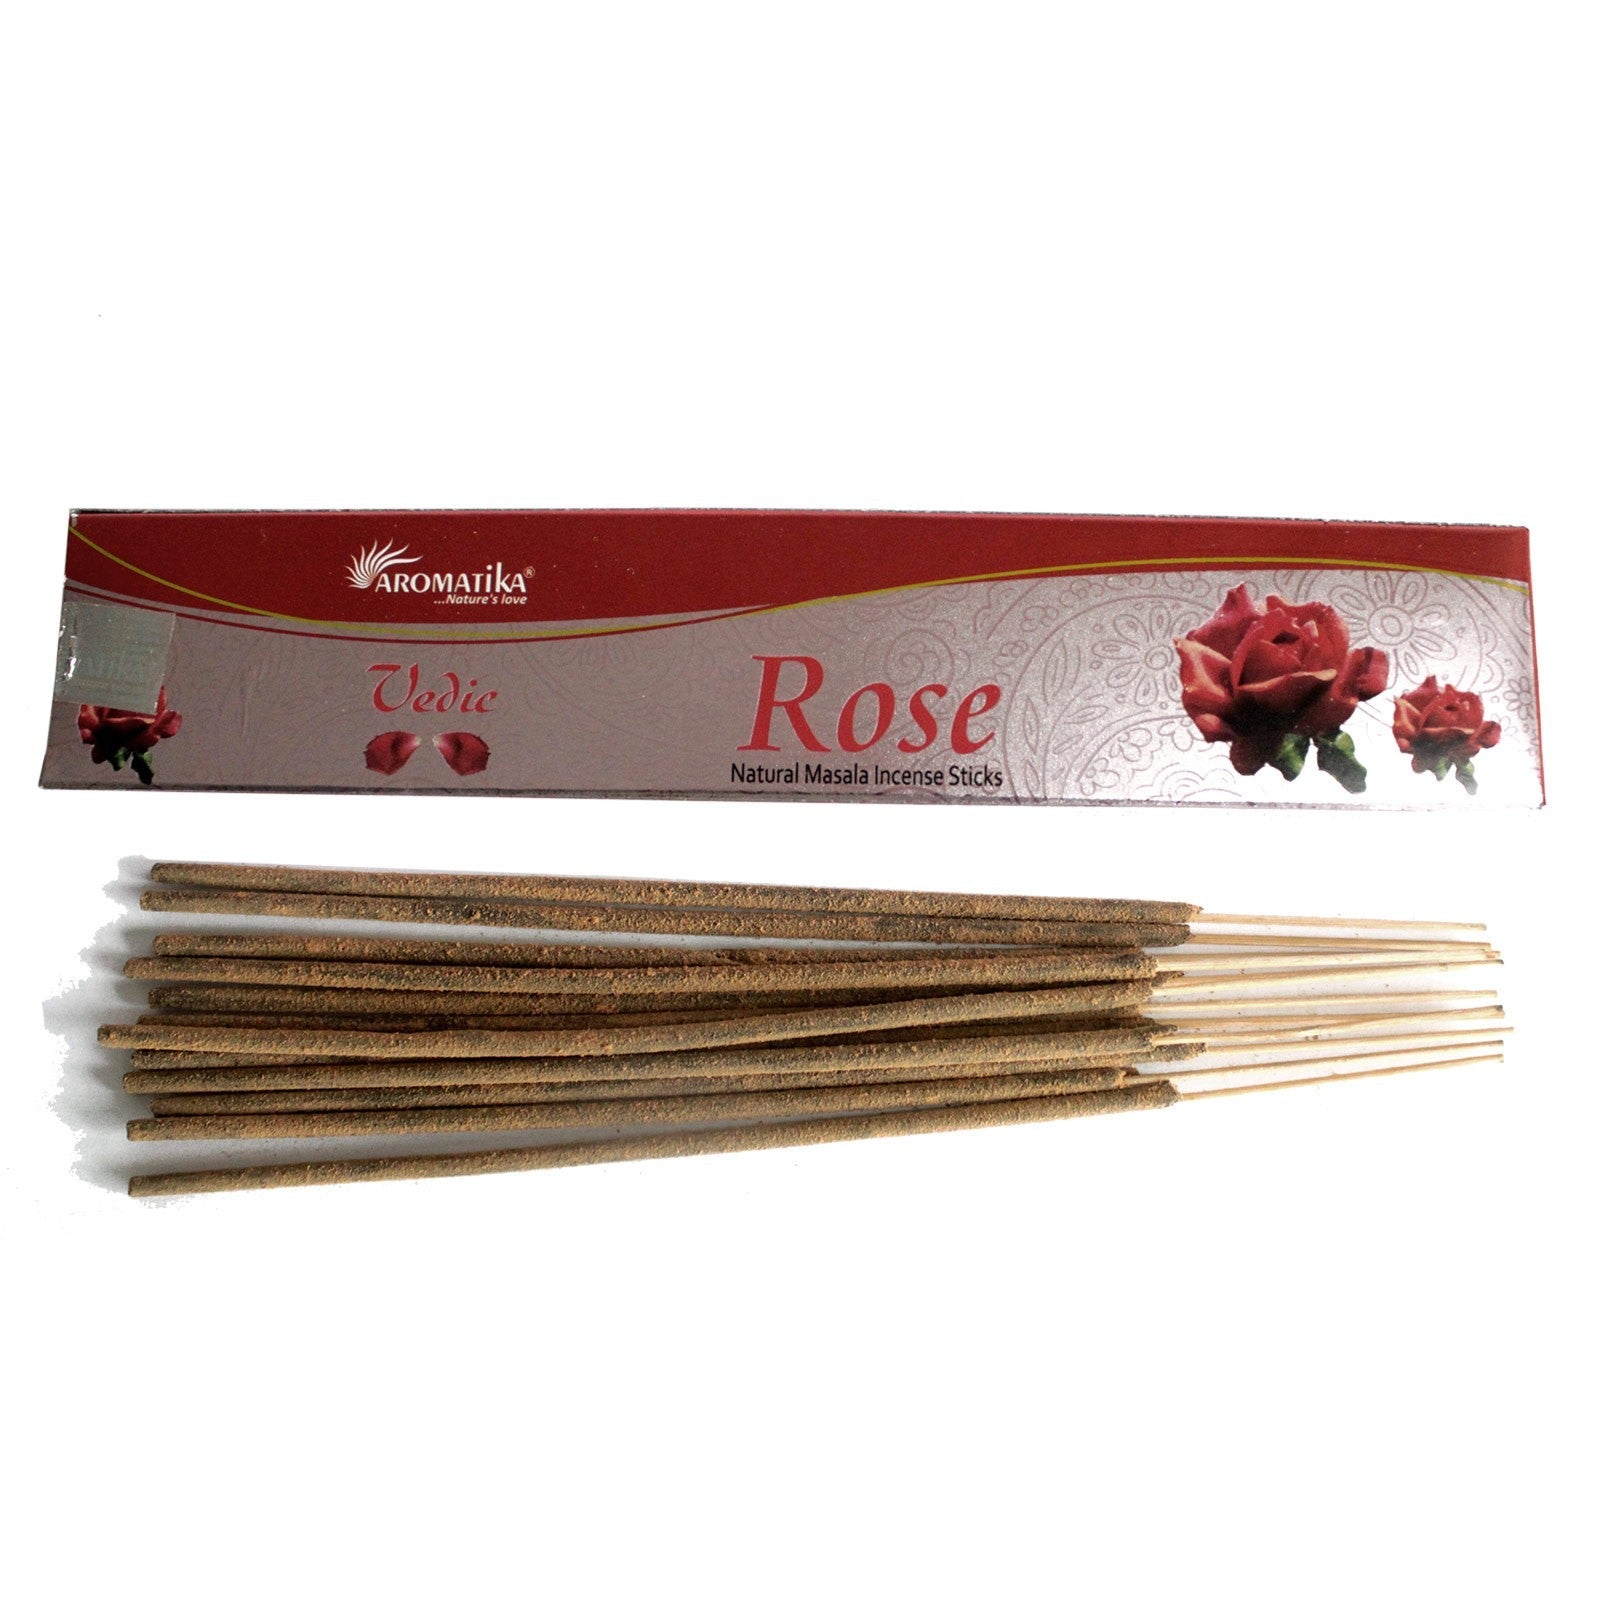 Vedic Natural Incense Sticks Incense Sticks Soul Inspired Rose 